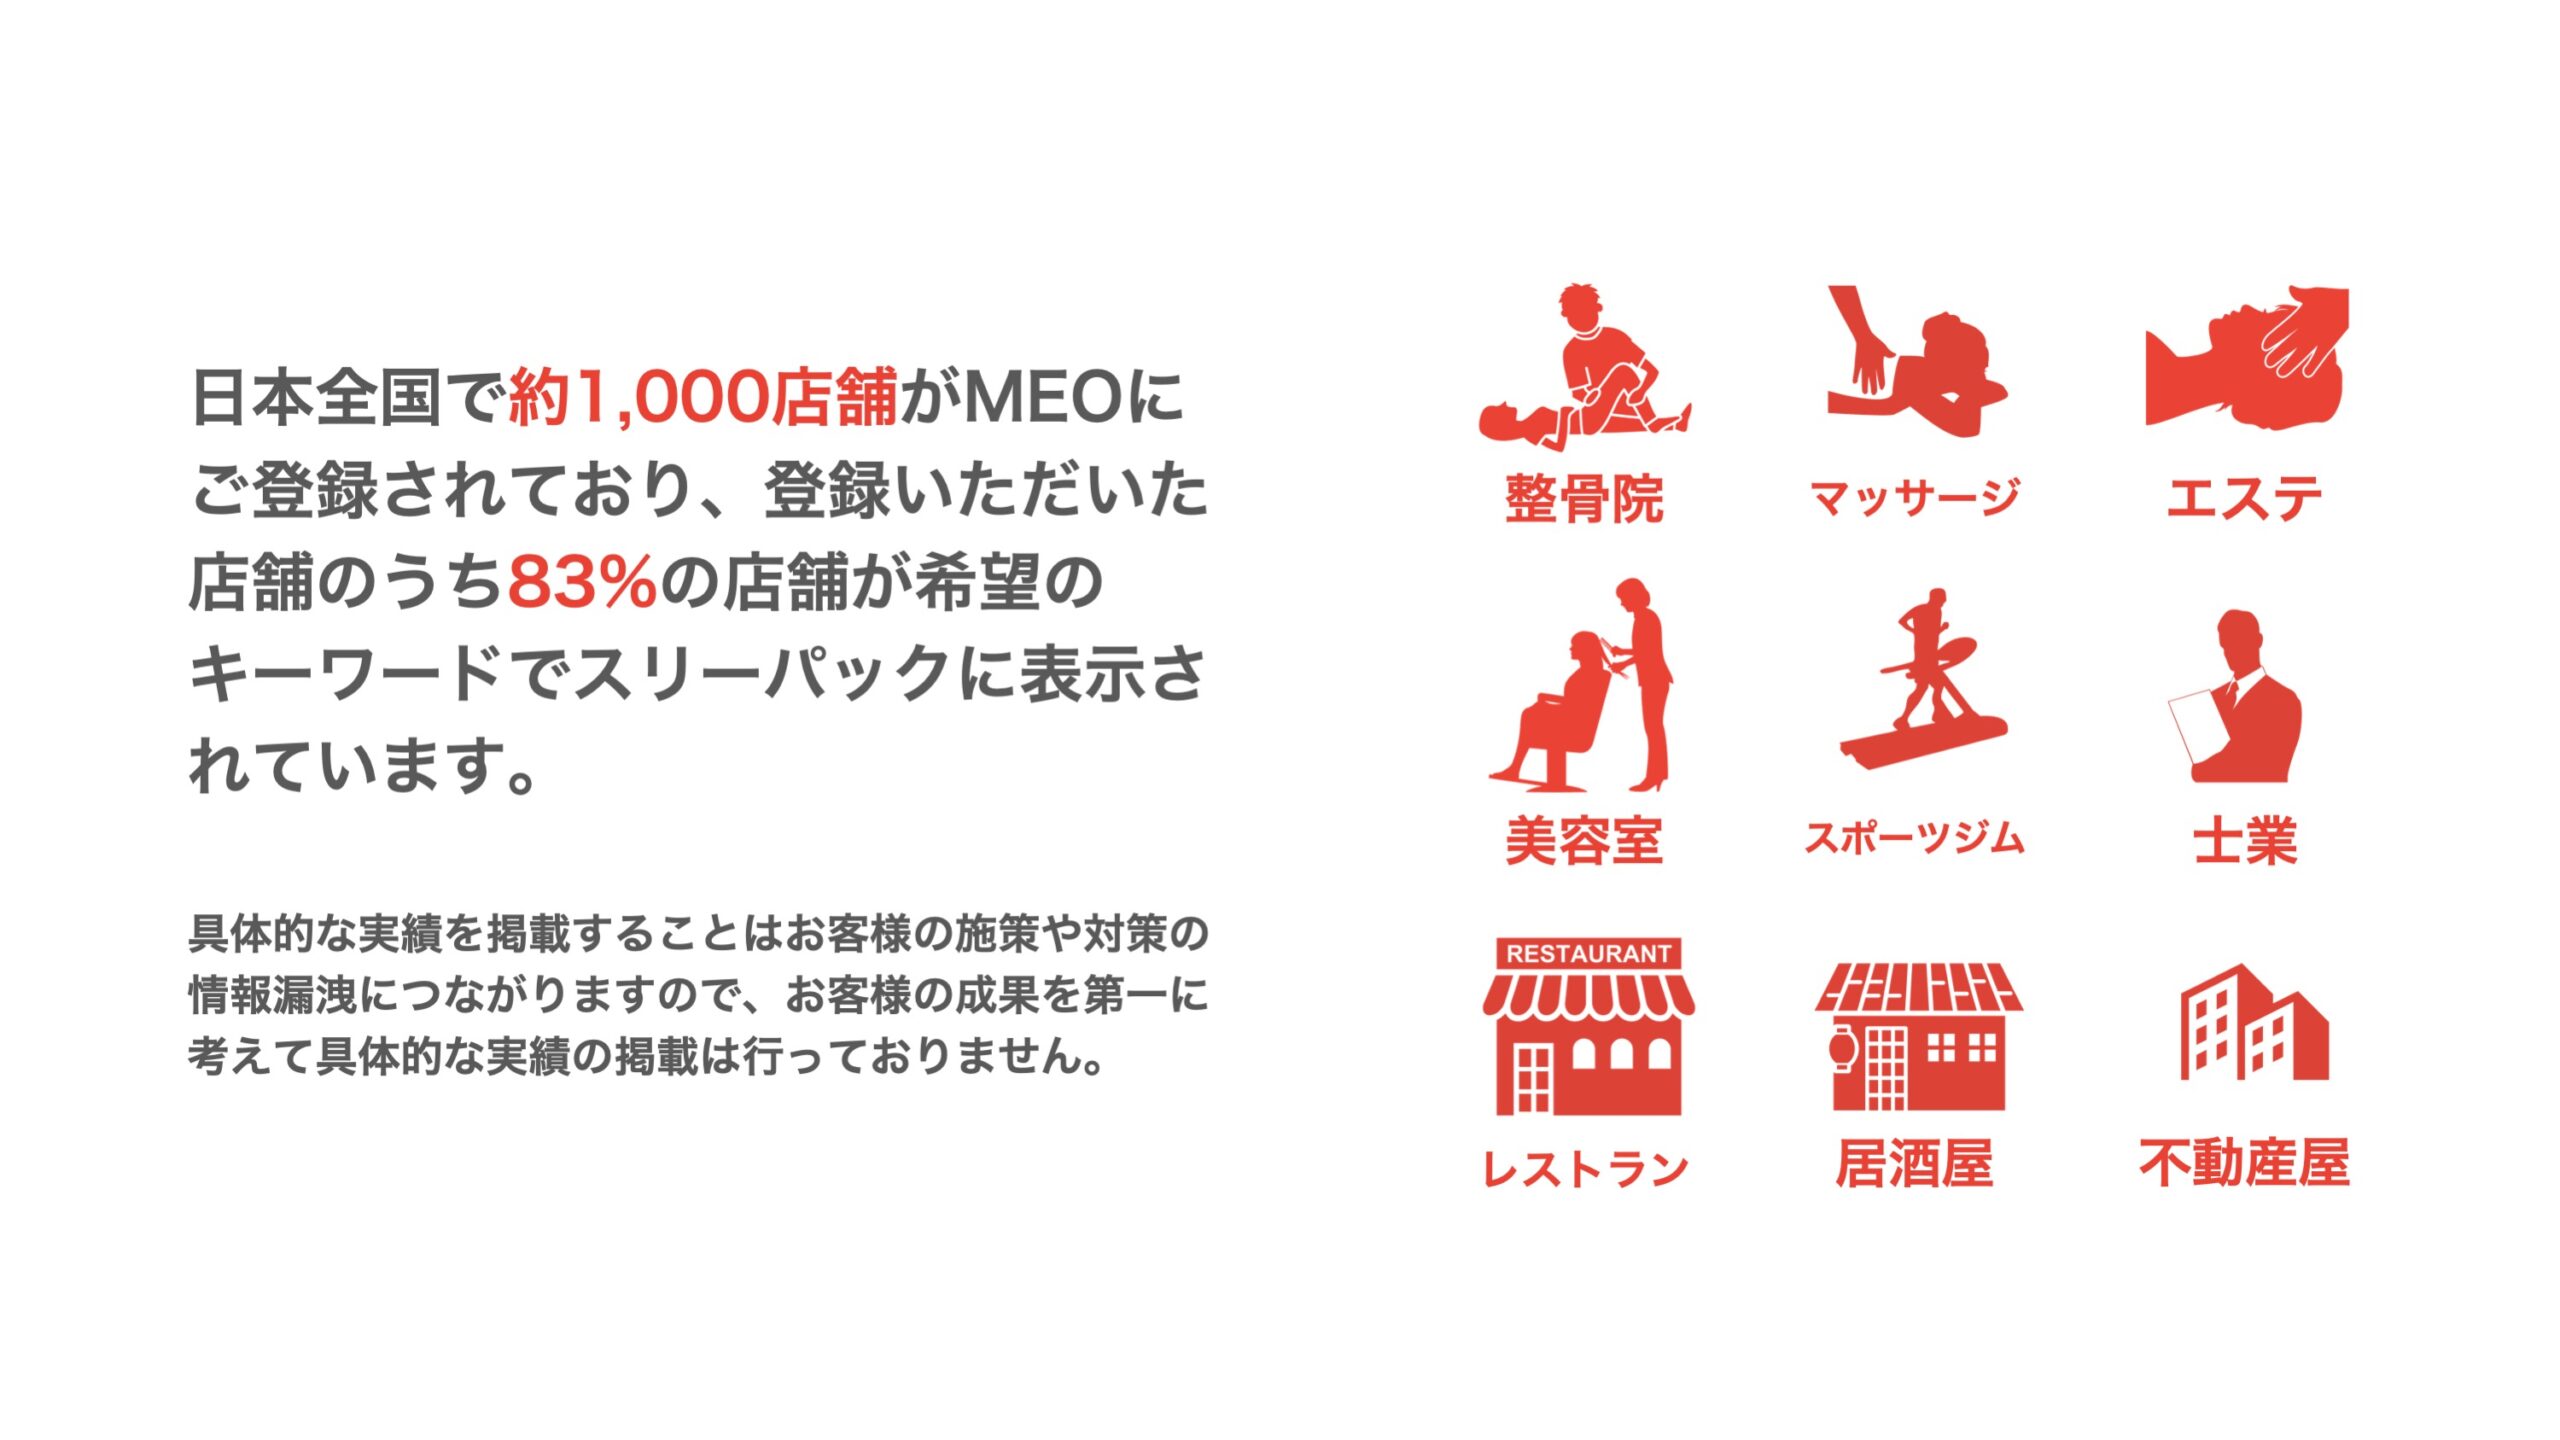 日本全国で約1,000店舗がMEOにご登録されており、登録いただいた店舗のうち83%の店舗が希望のキーワードでスリーパックに表示されています。